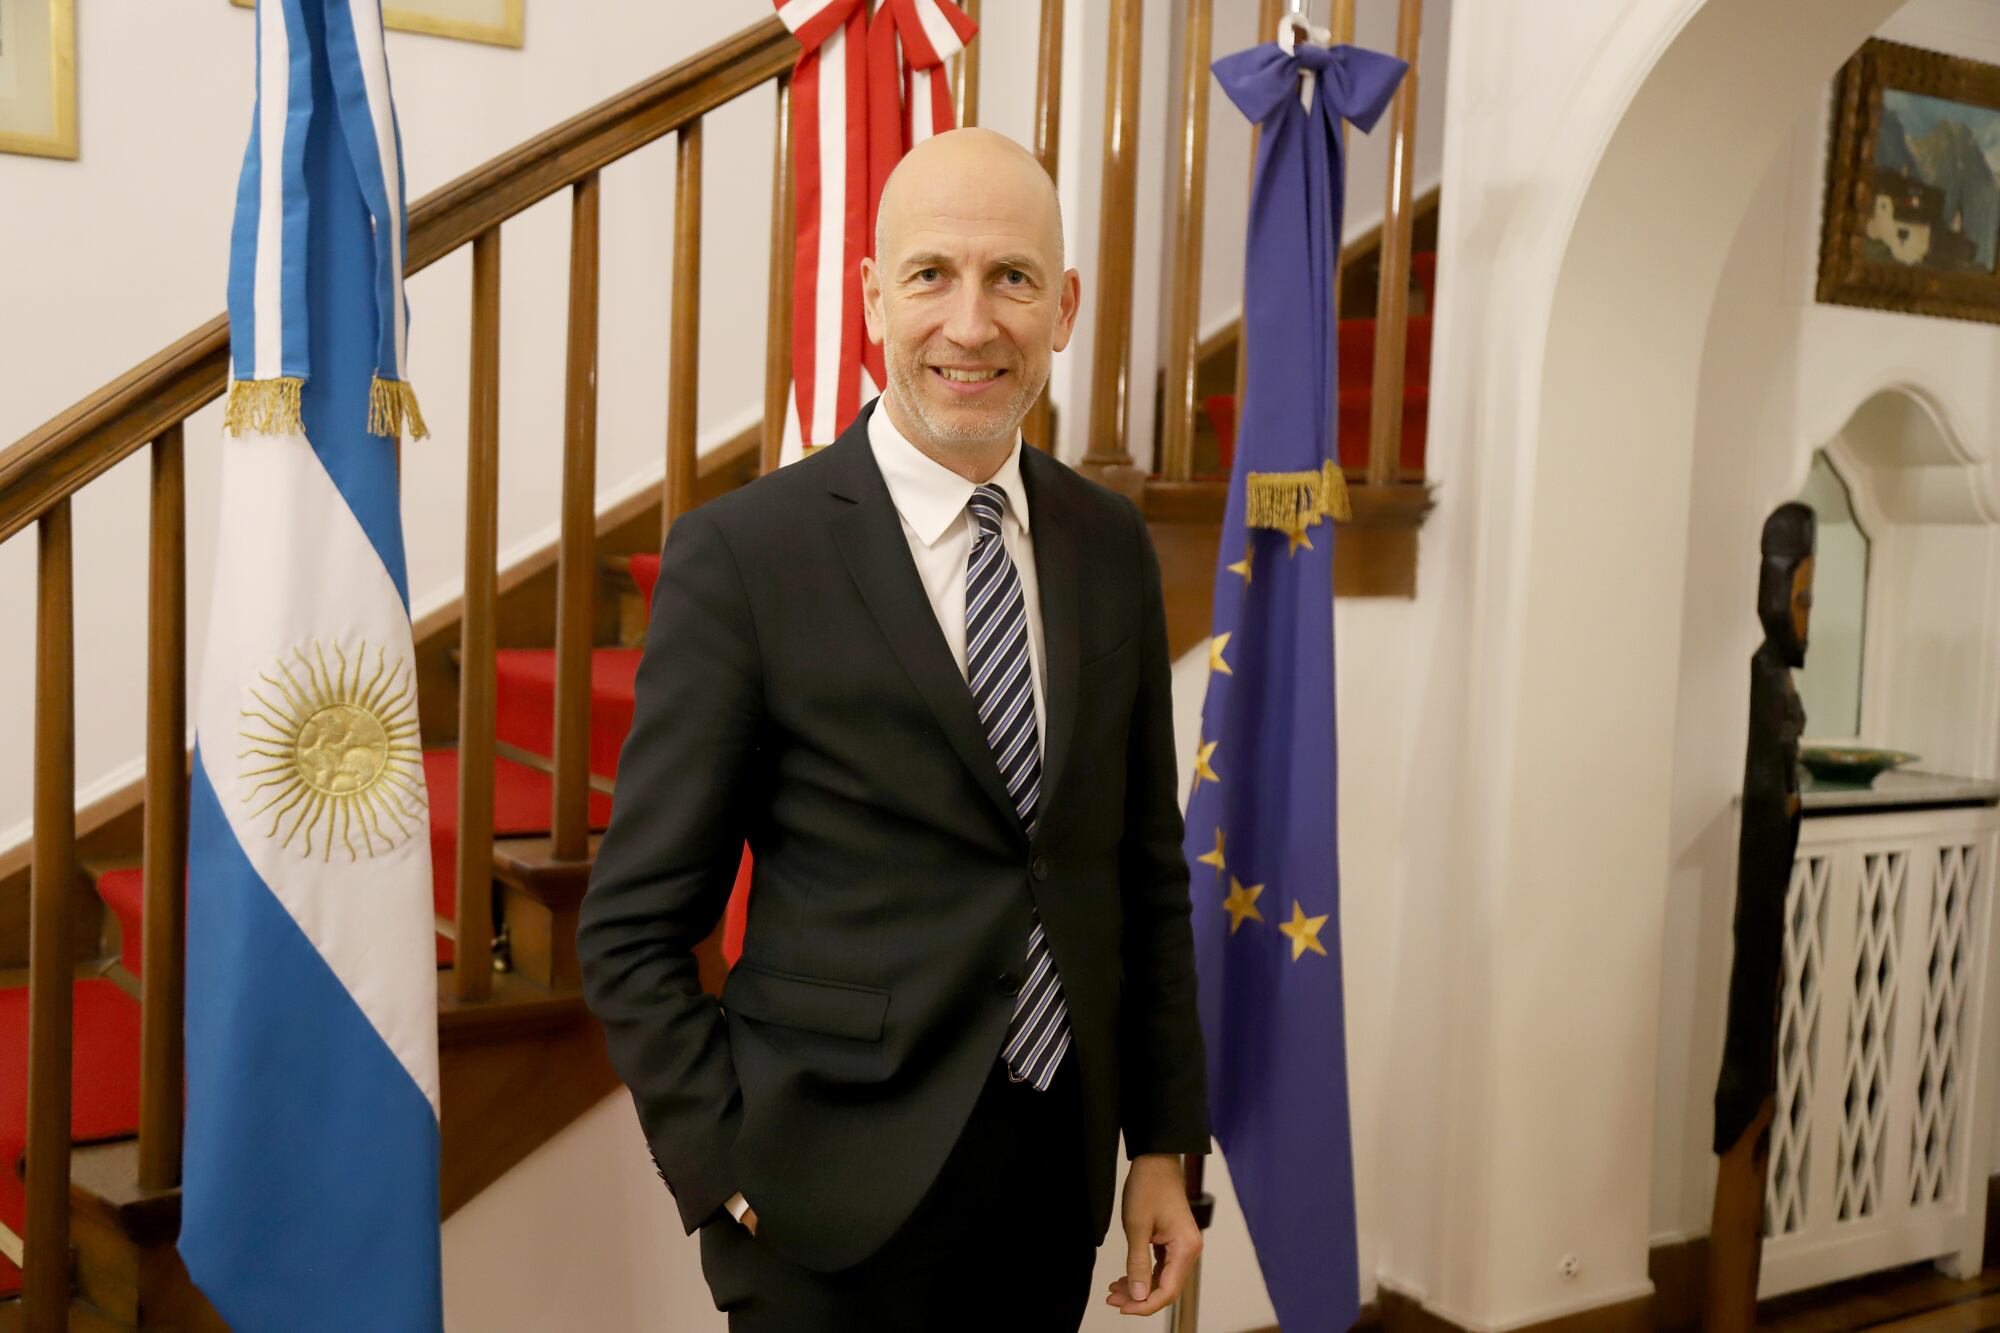 Entrevista: cuál es el principal reclamo de las empresas extranjeras en la Argentina según Martin Kocher, ministro de Economía de Austria